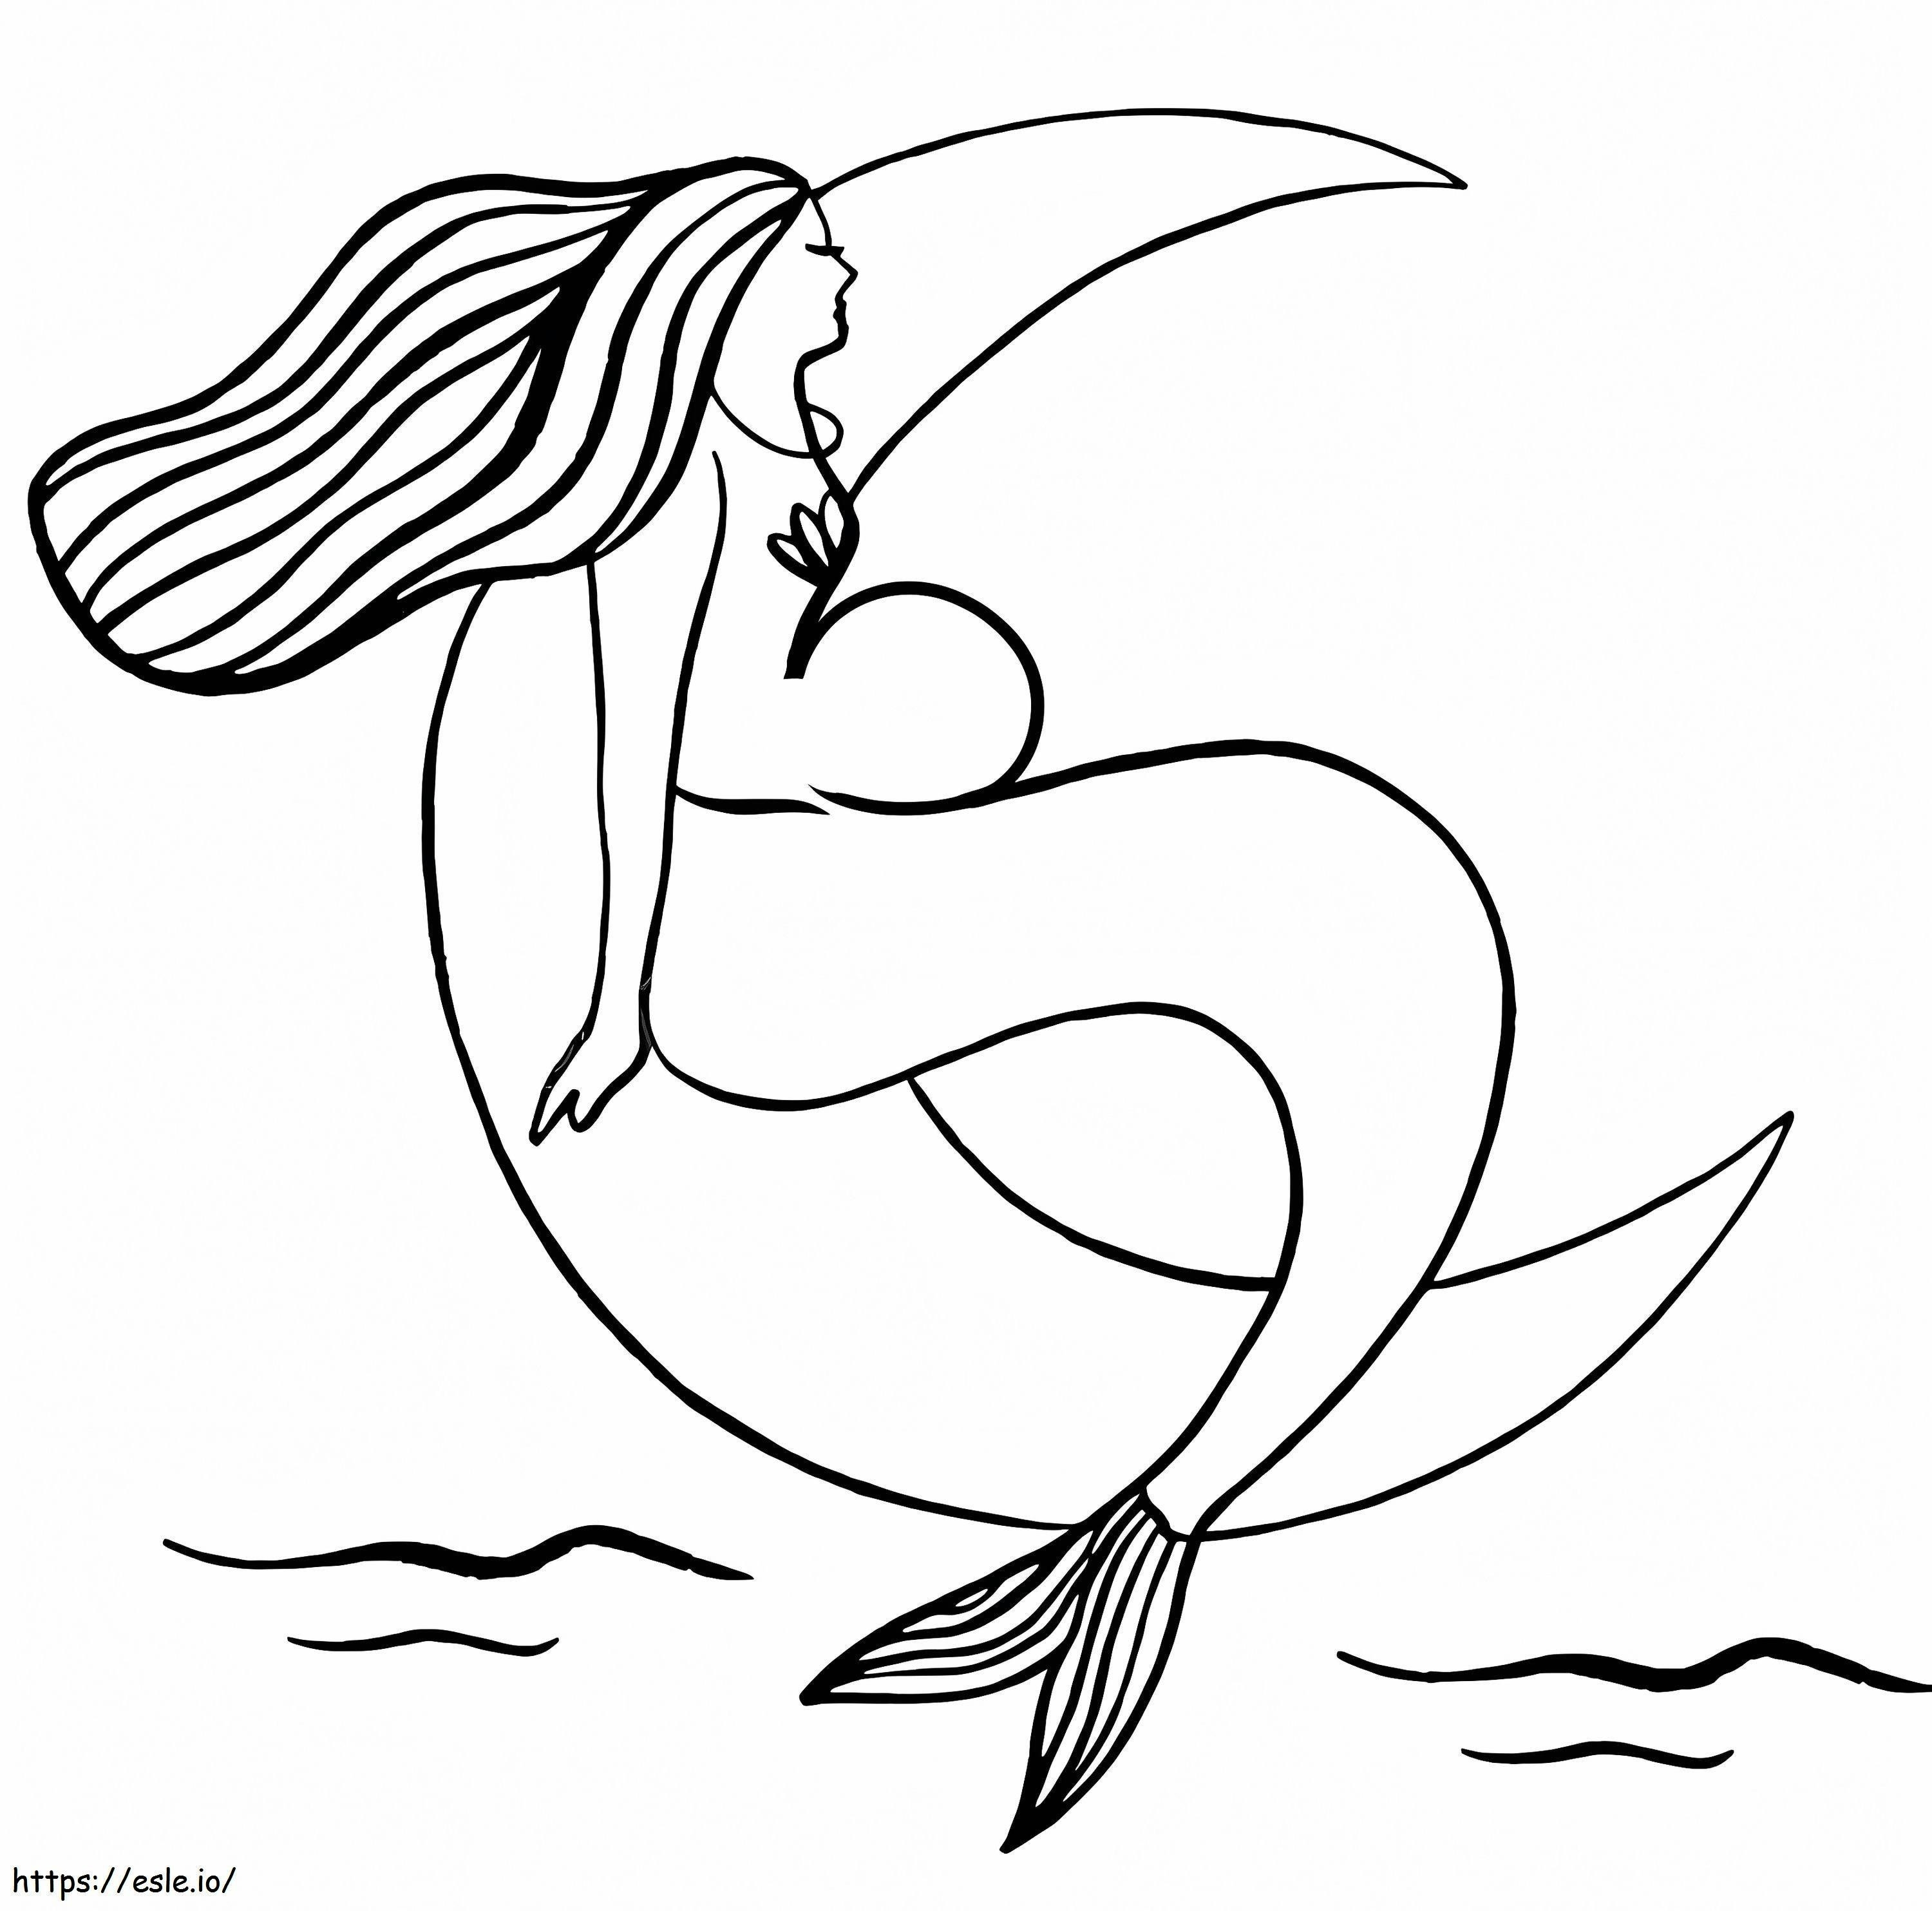 Meerjungfrau und Mond ausmalbilder